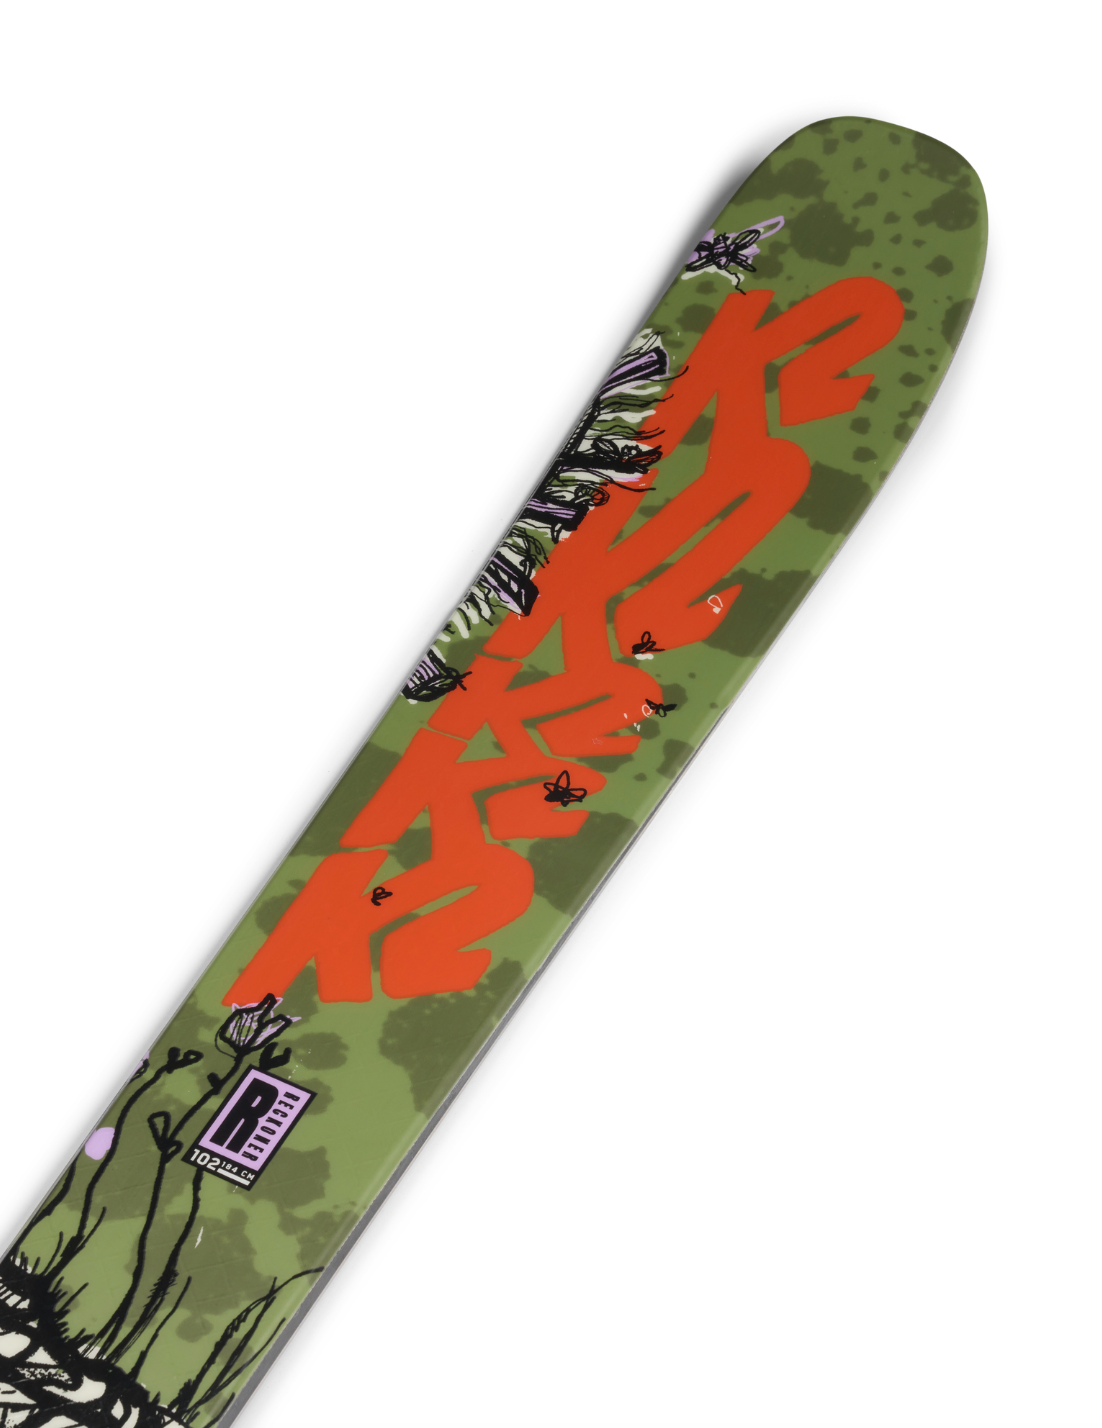 K2 Reckoner 102 Skis 2023